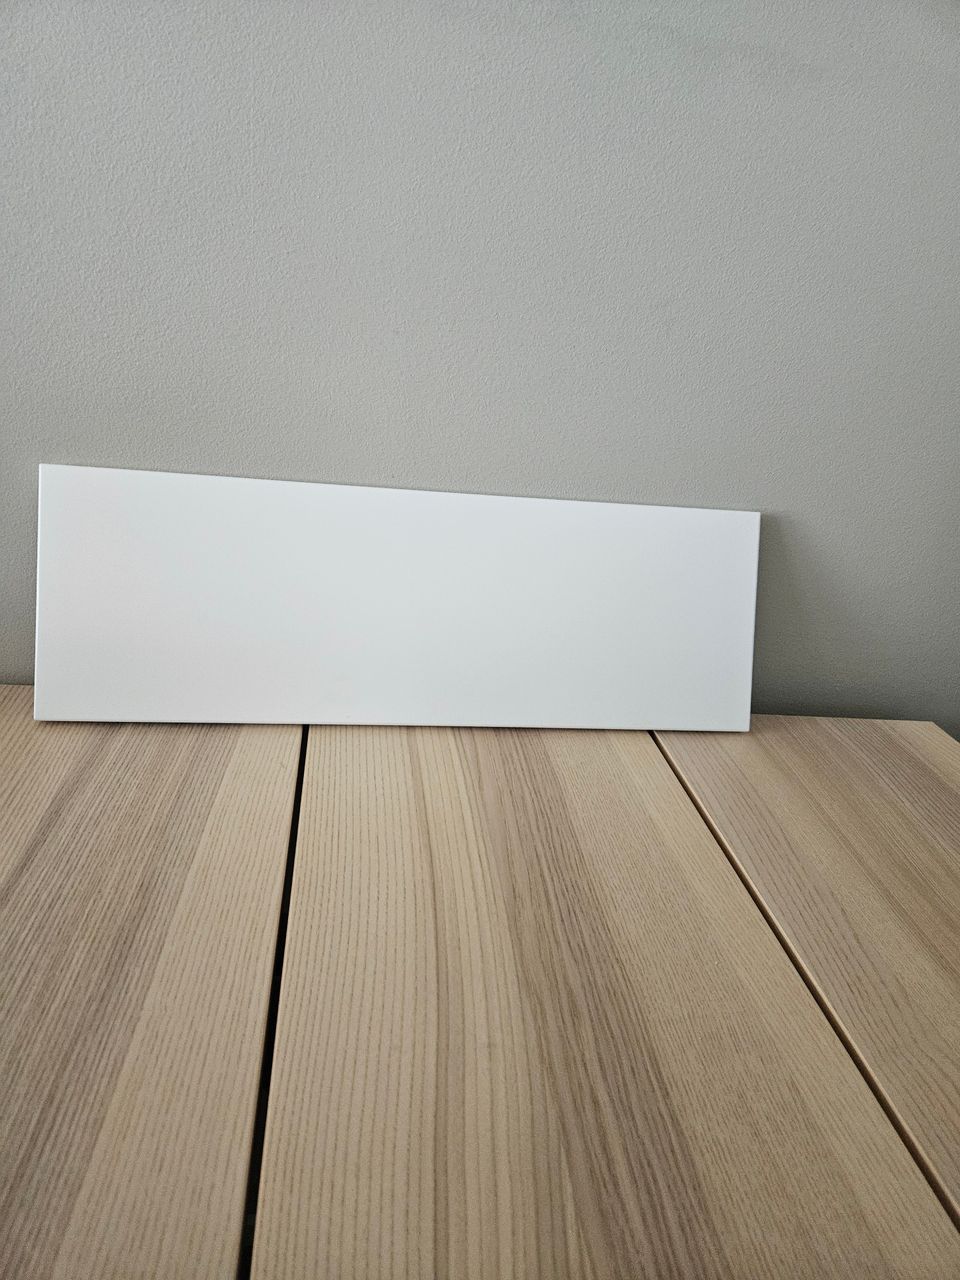 Ikea Utrusta laatikon etulevy (60cm)